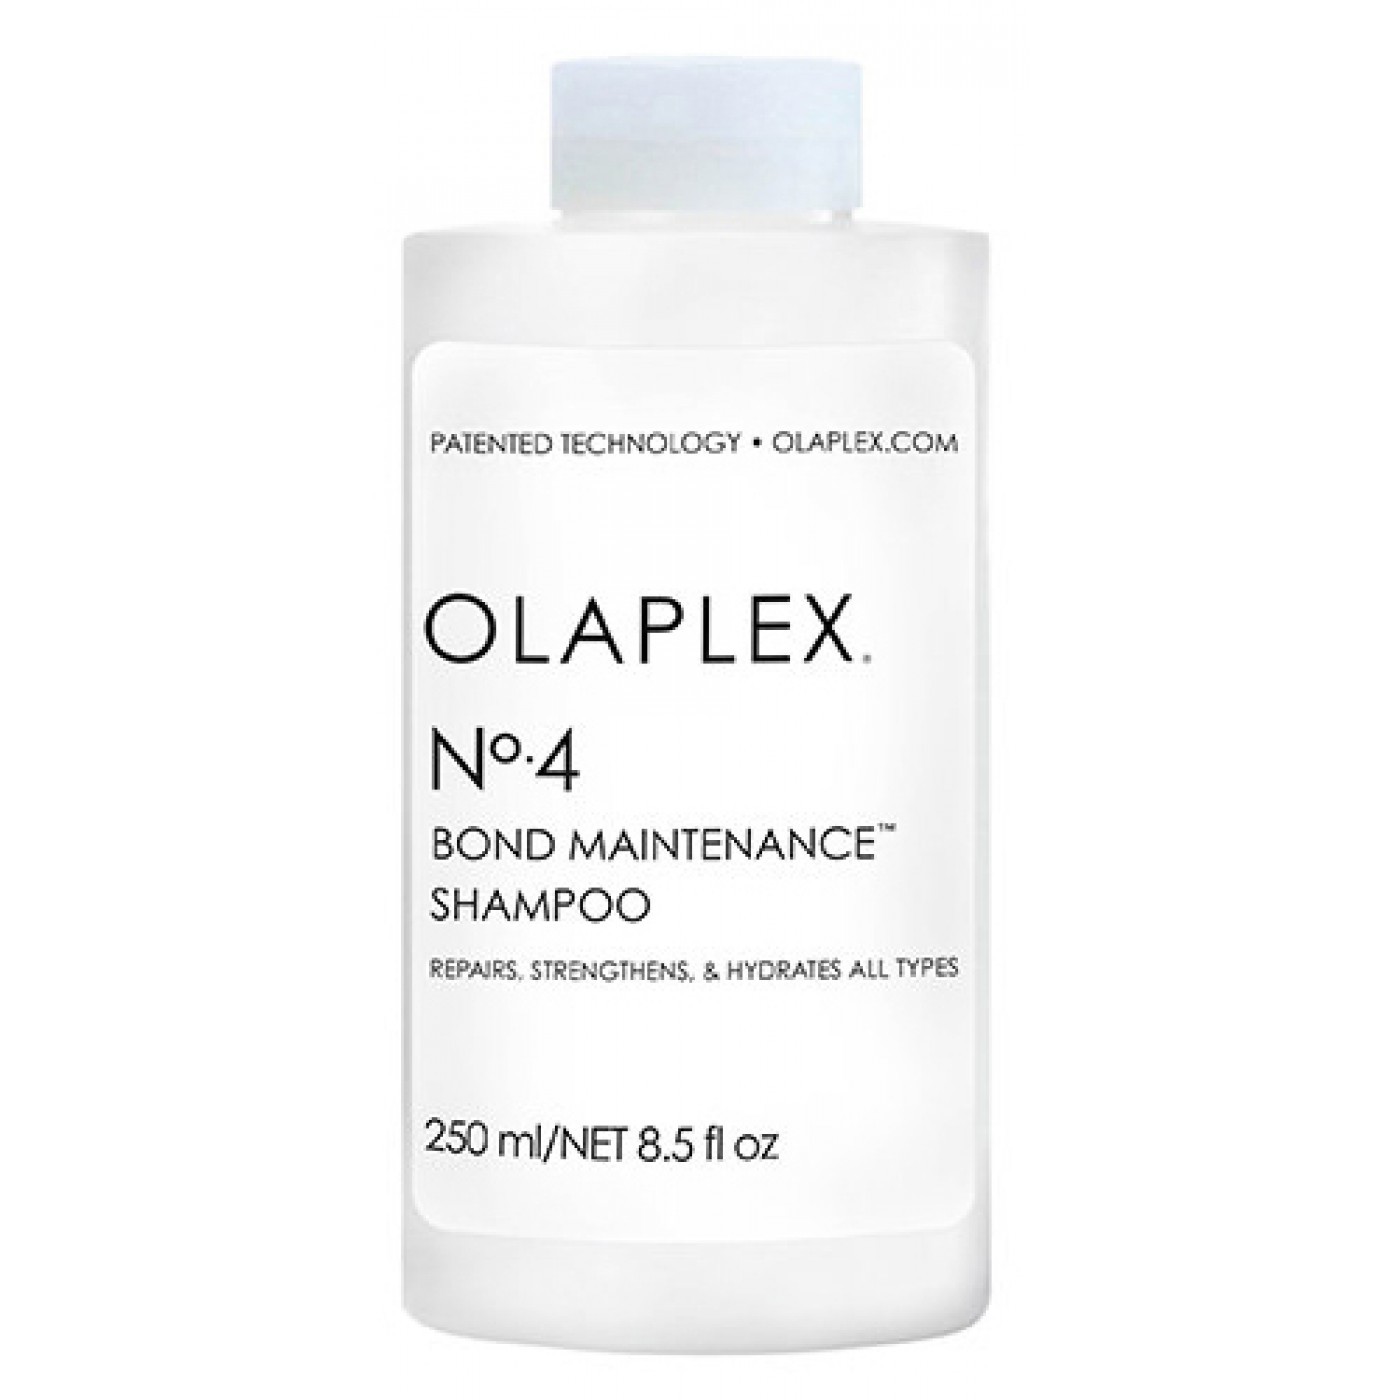 OLAPLEX Bond Maintenance Shampoo N° 4 250 ml